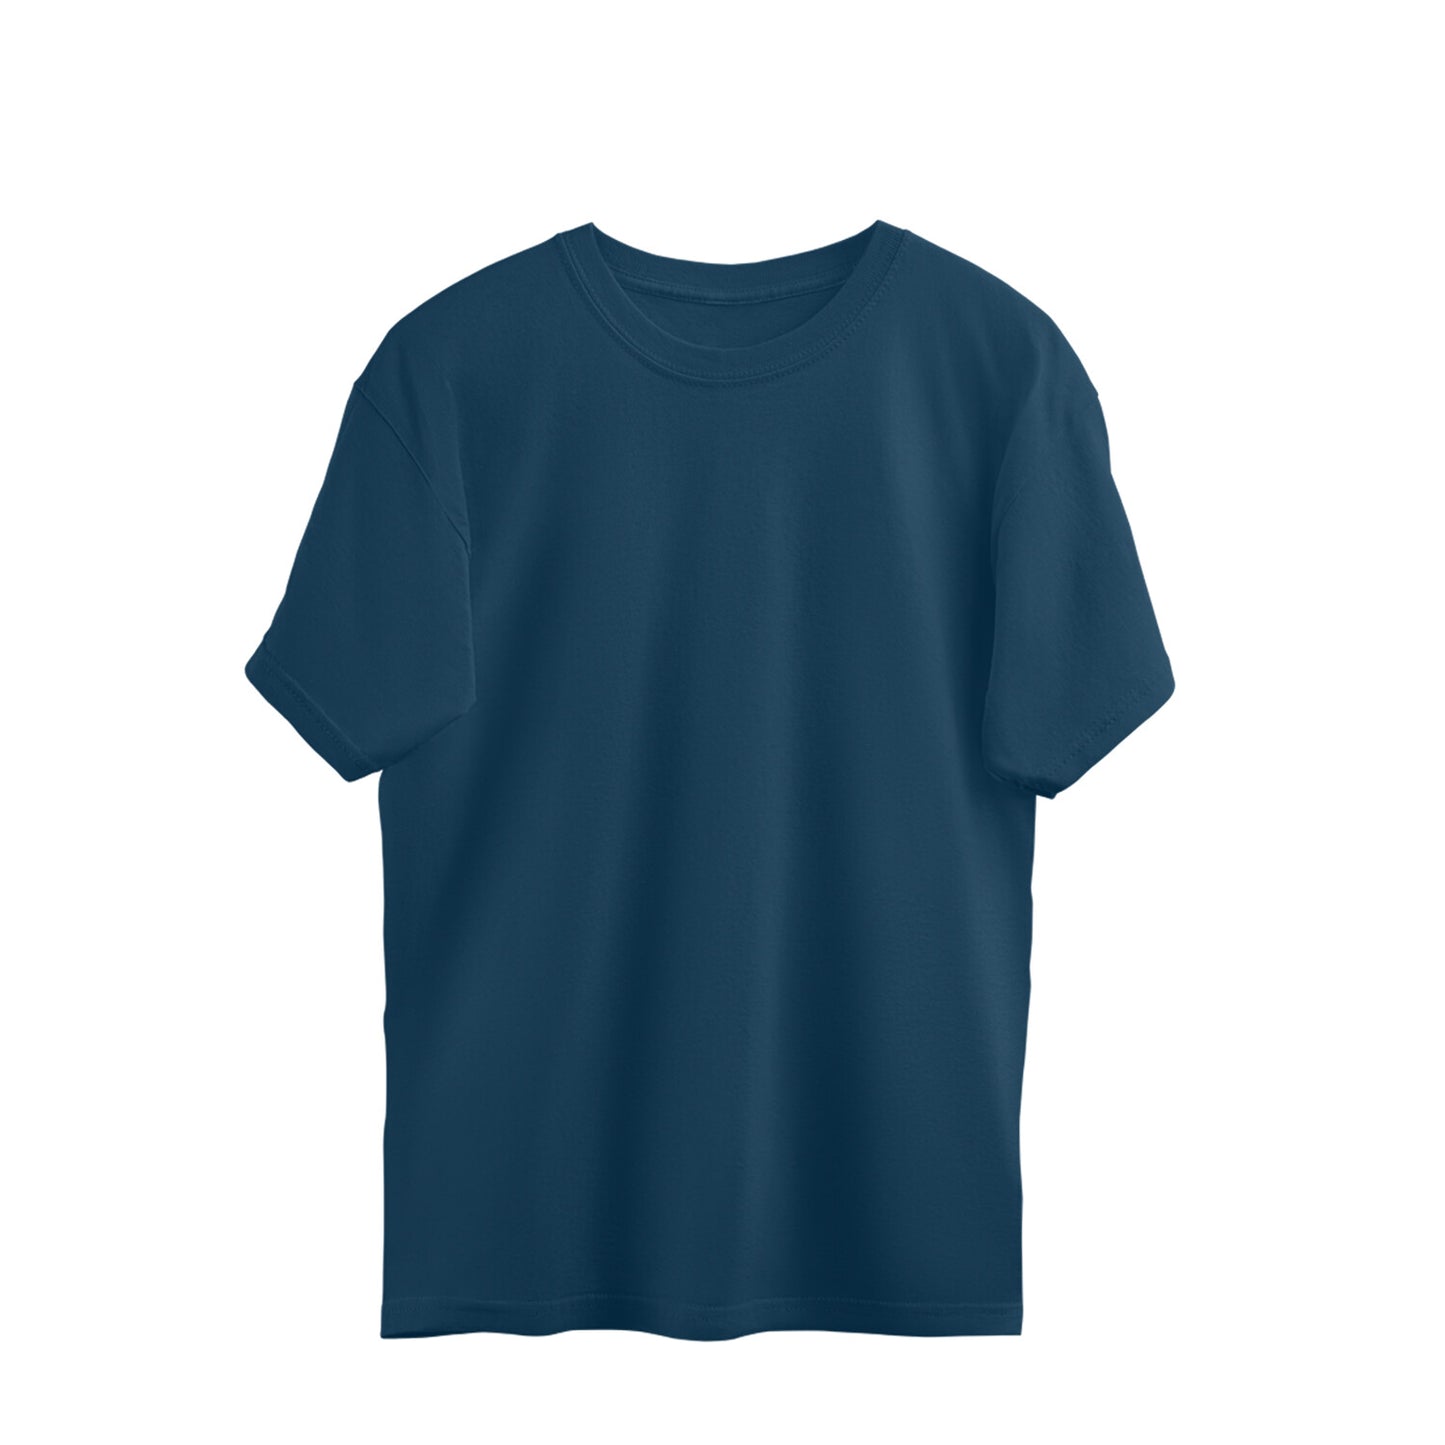 Navy Blue - Oversized T-shirts